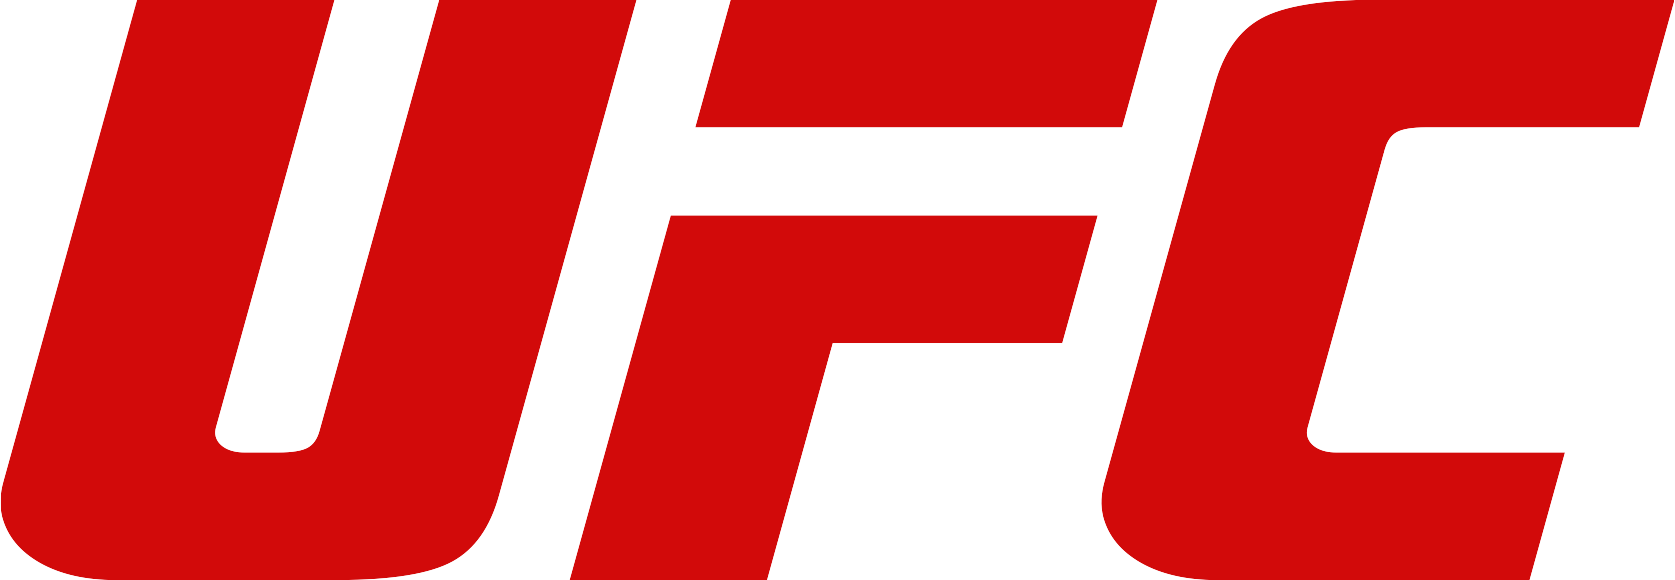 File:UFC Logo.png - Wikipedia